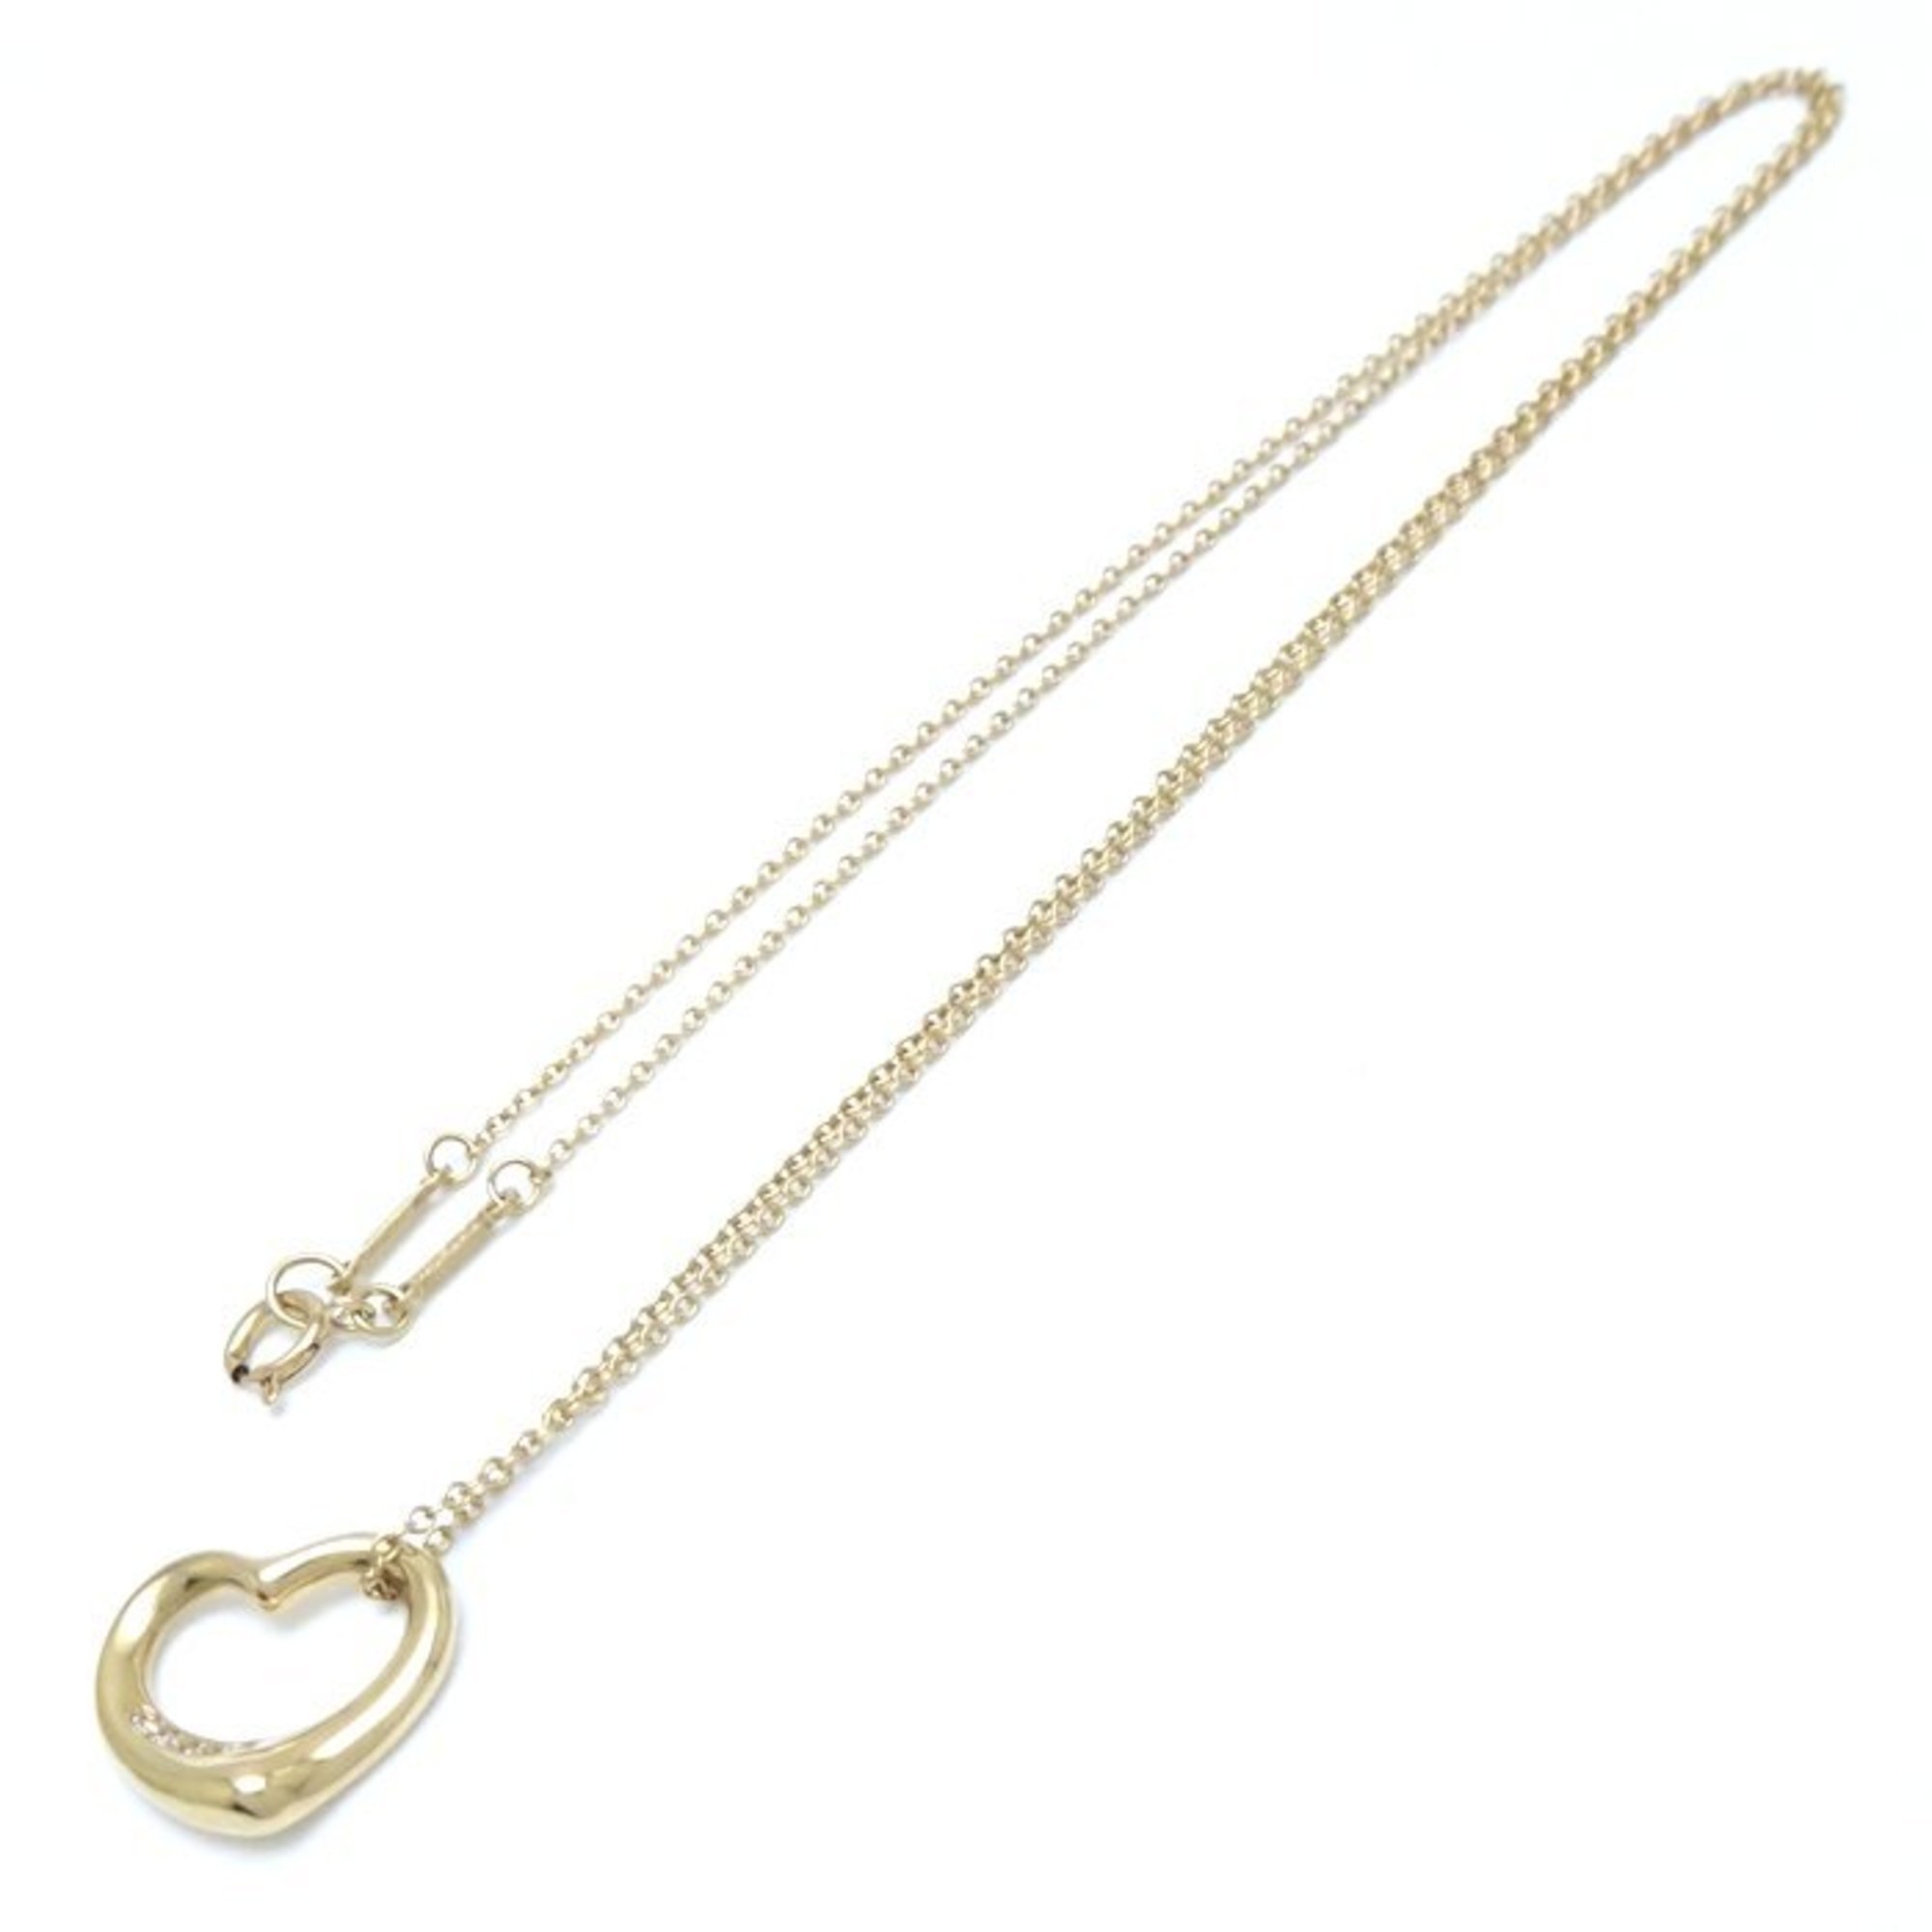 TIFFANY&Co. Tiffany Heart Necklace 5P Diamond Elsa Peretti K18YG Yellow Gold 291640